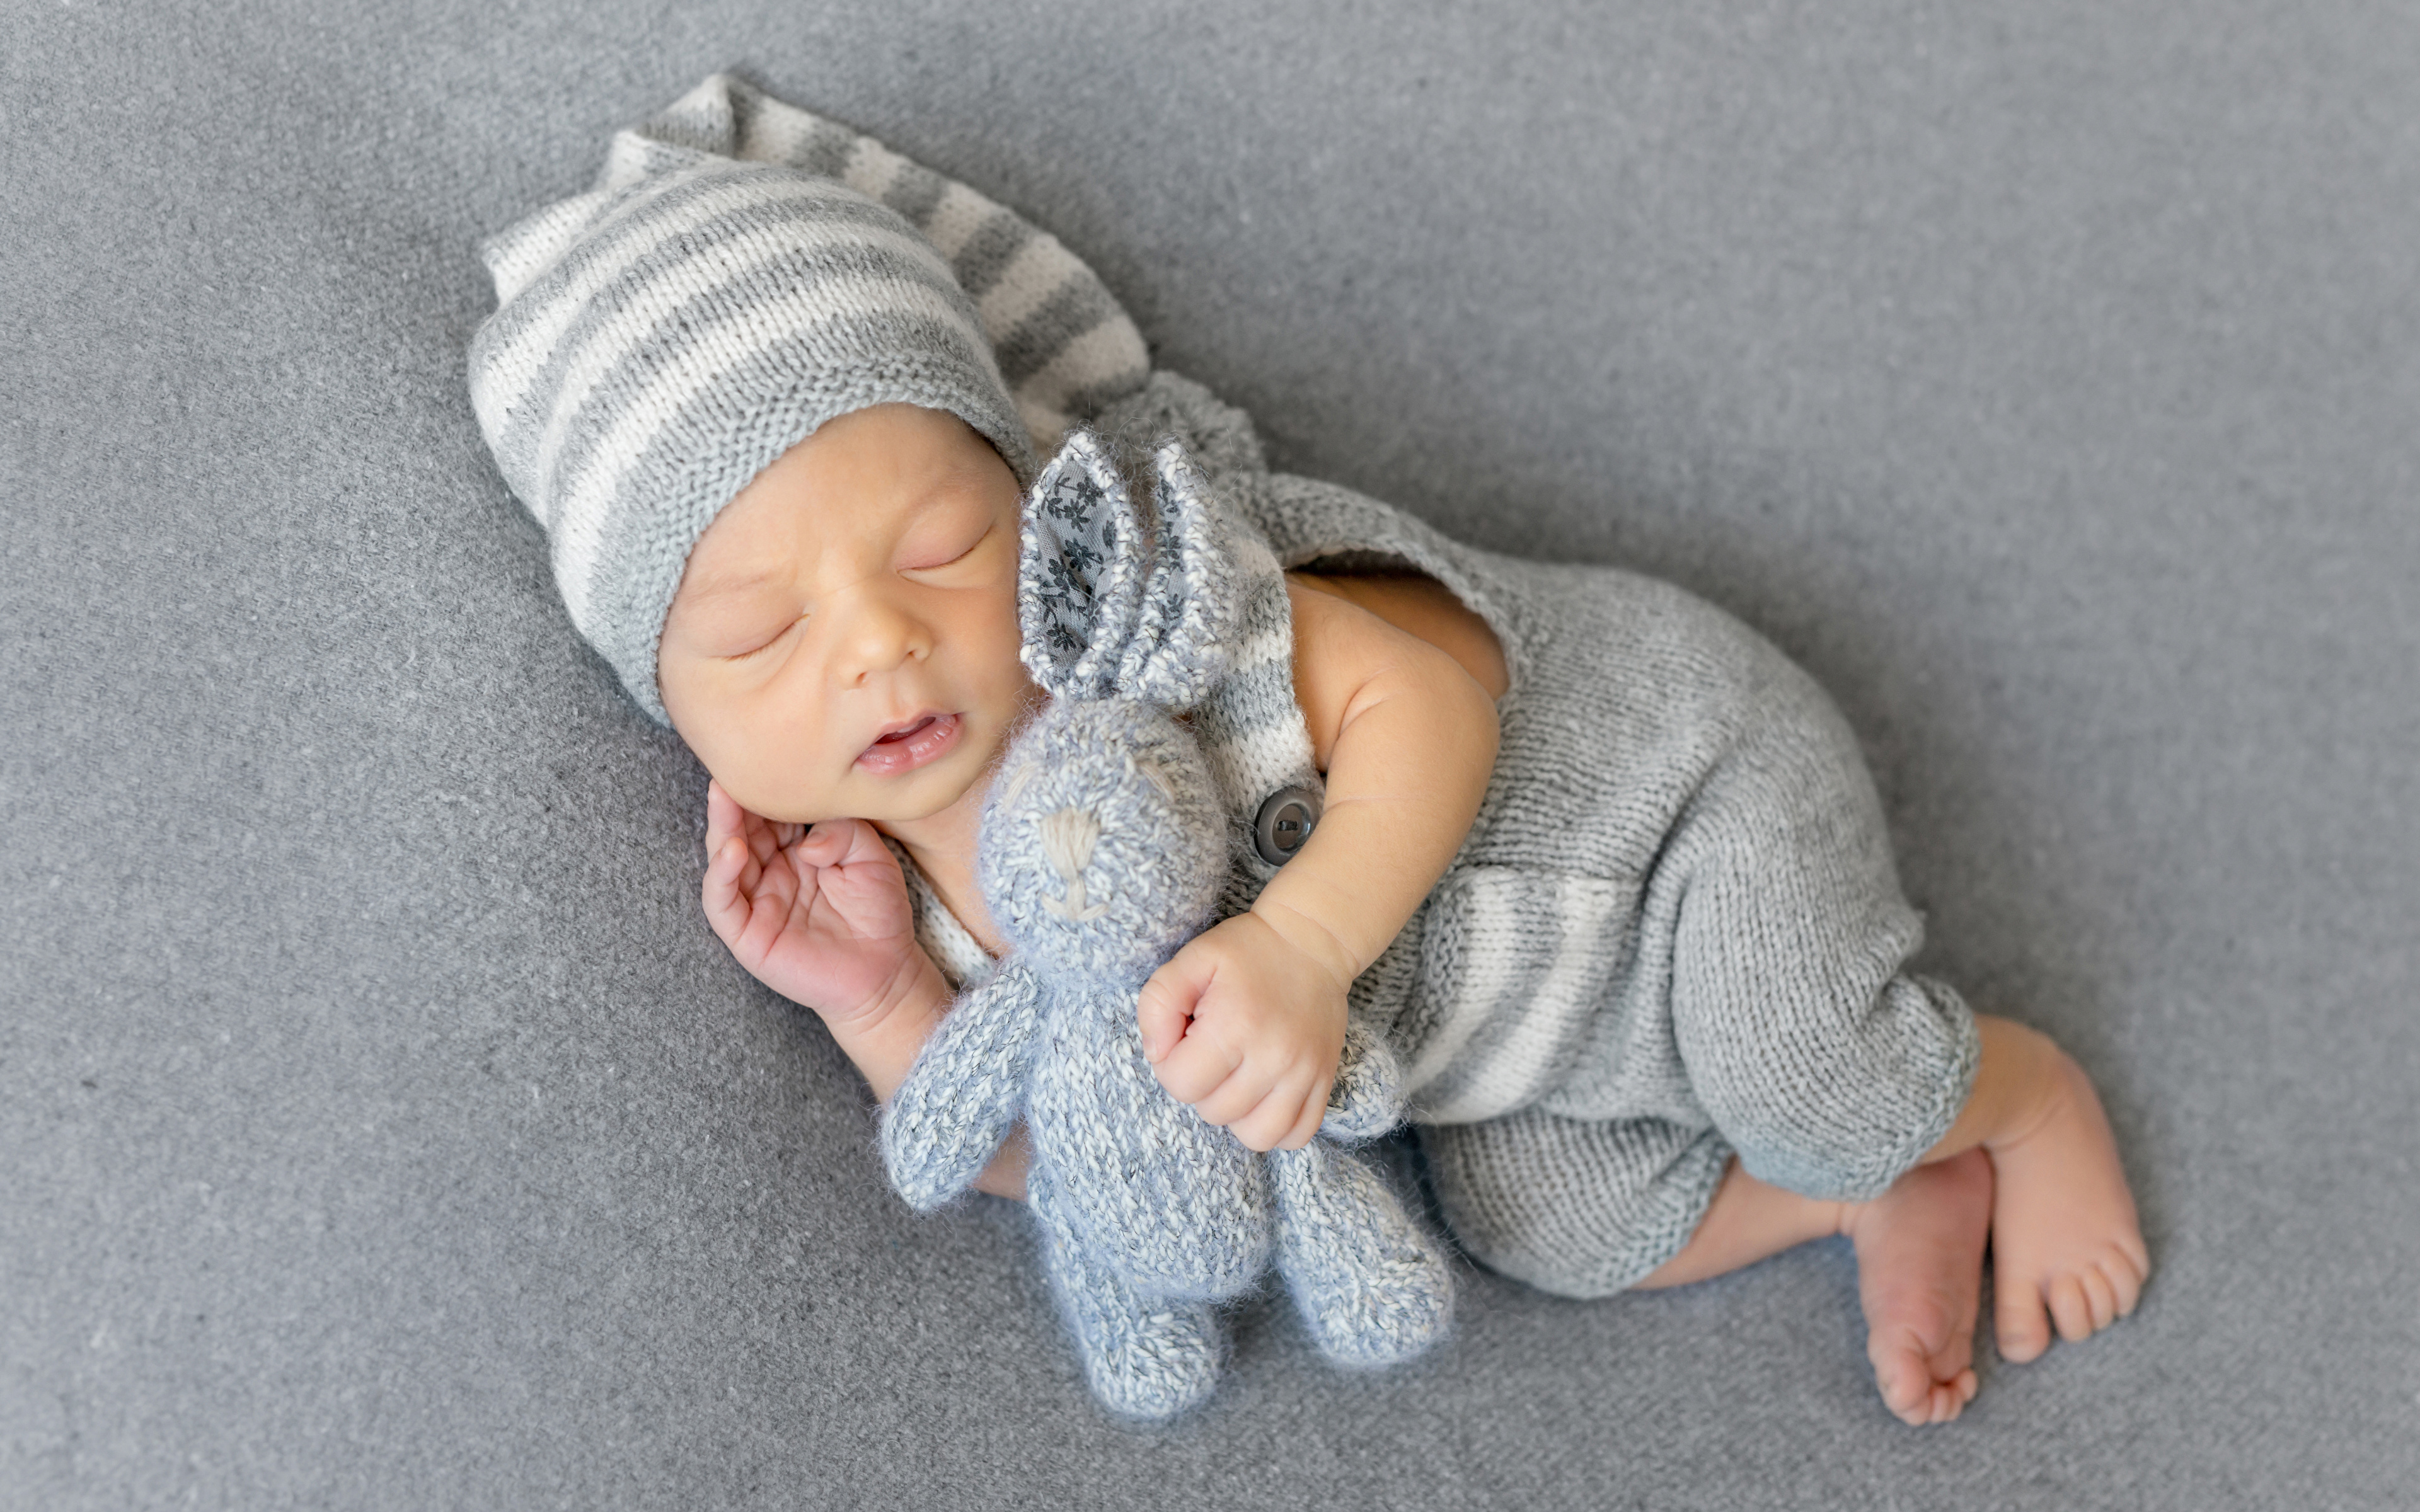 Фотография Зайцы Младенцы ребёнок Спит шапка игрушка 3840x2400 младенца младенец грудной ребёнок Дети сон спят Шапки спящий в шапке Игрушки